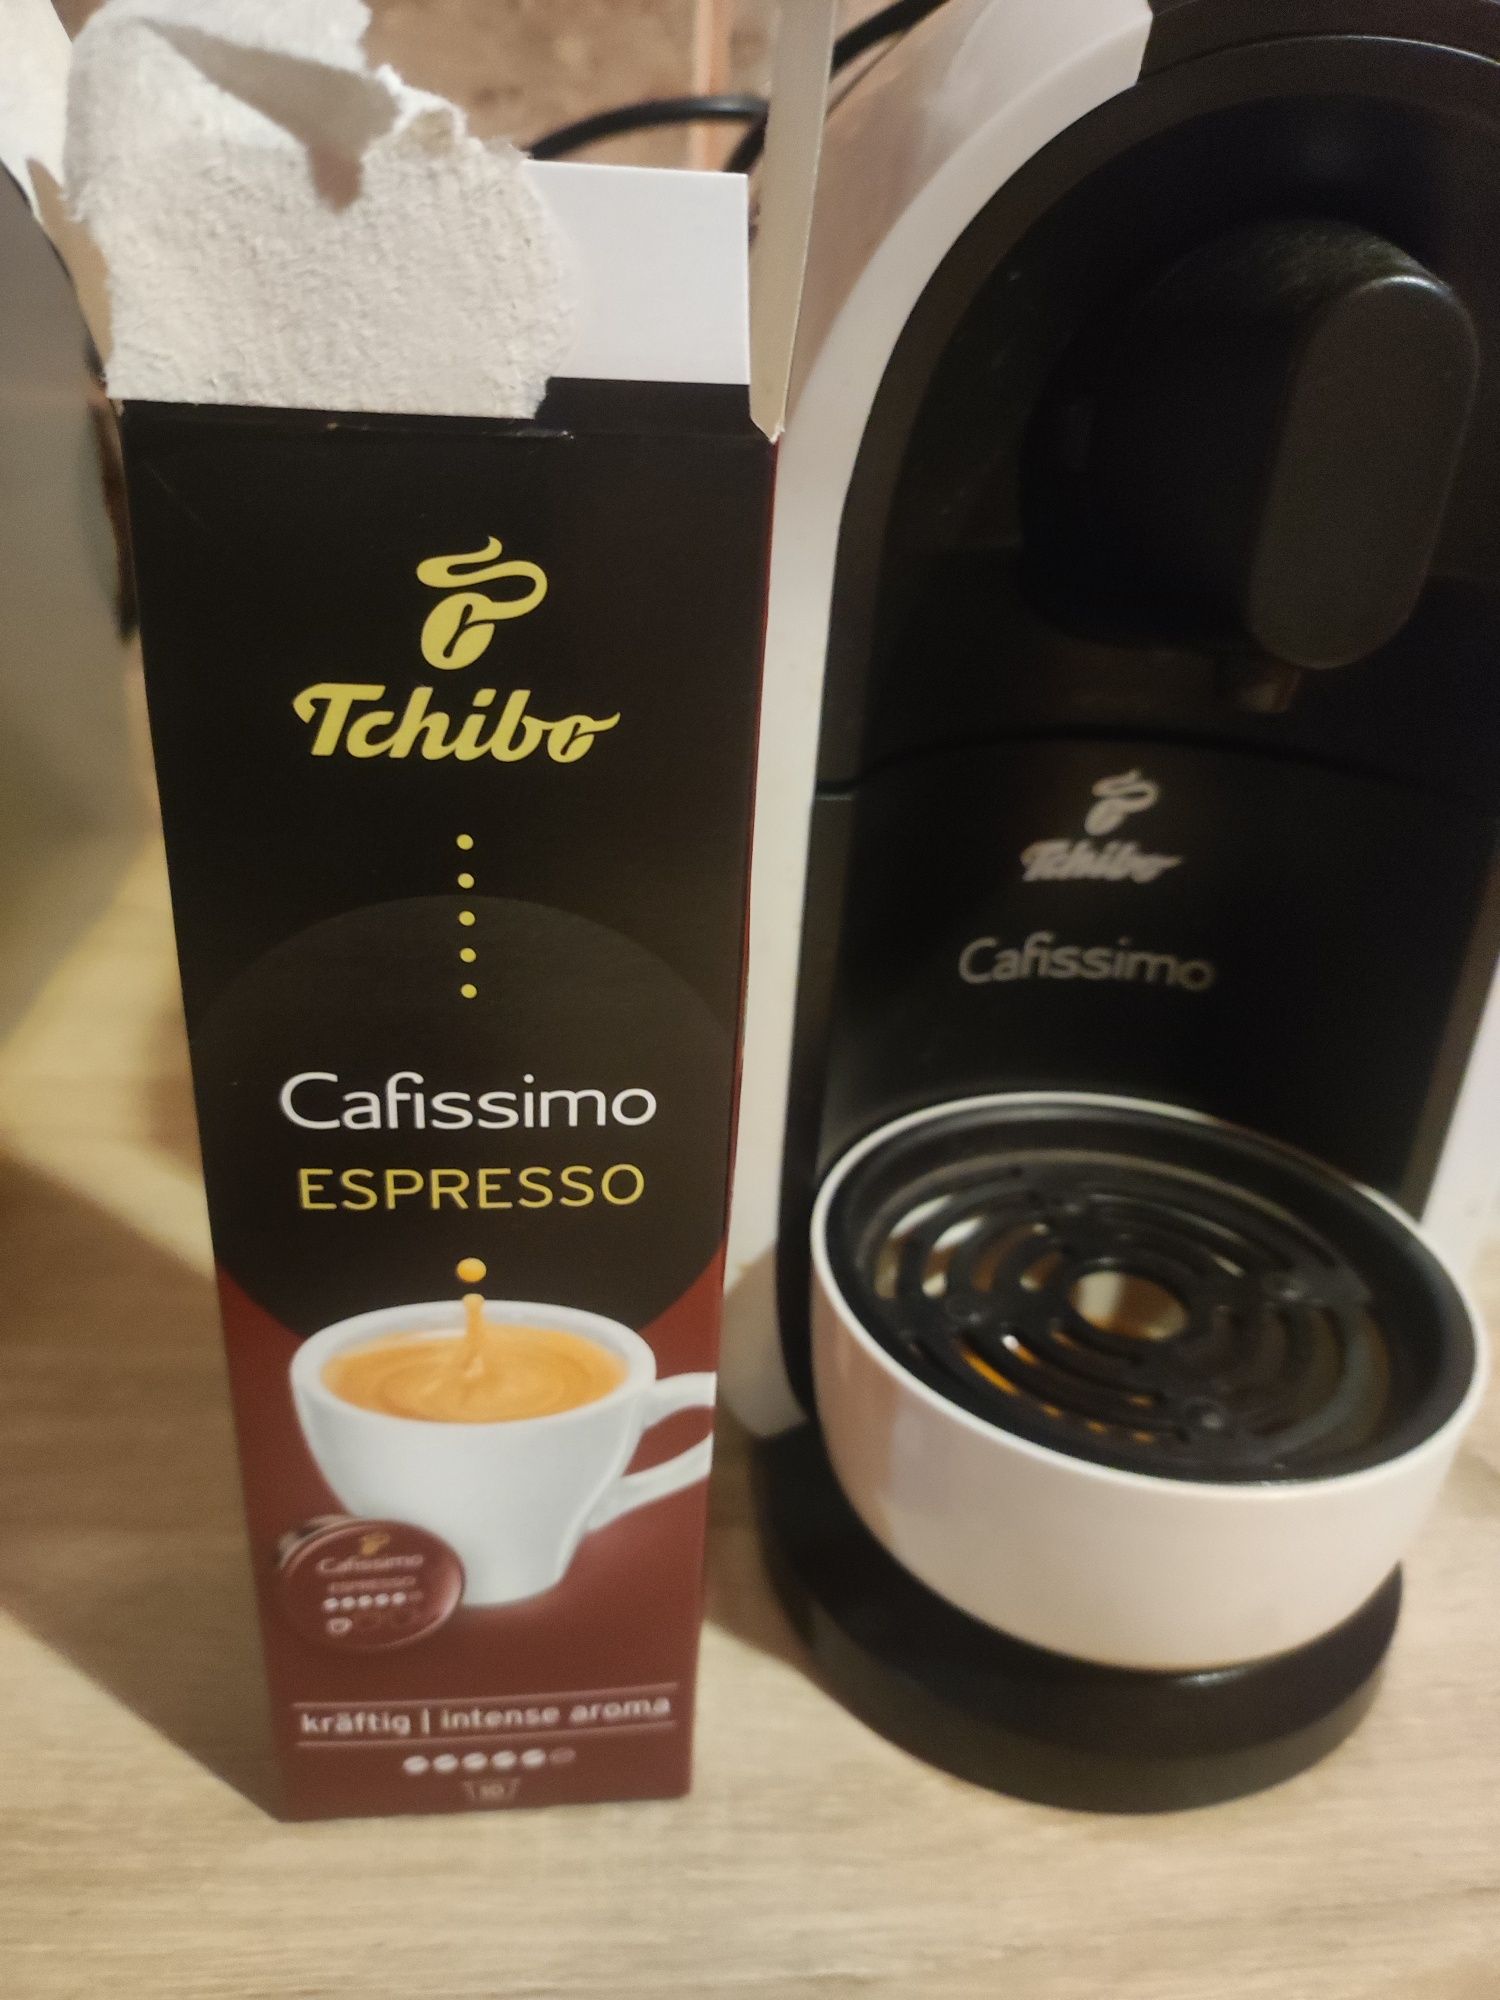 Expressor espressor filtru cafea Tchibo Cafissimo ca nou primit cadou